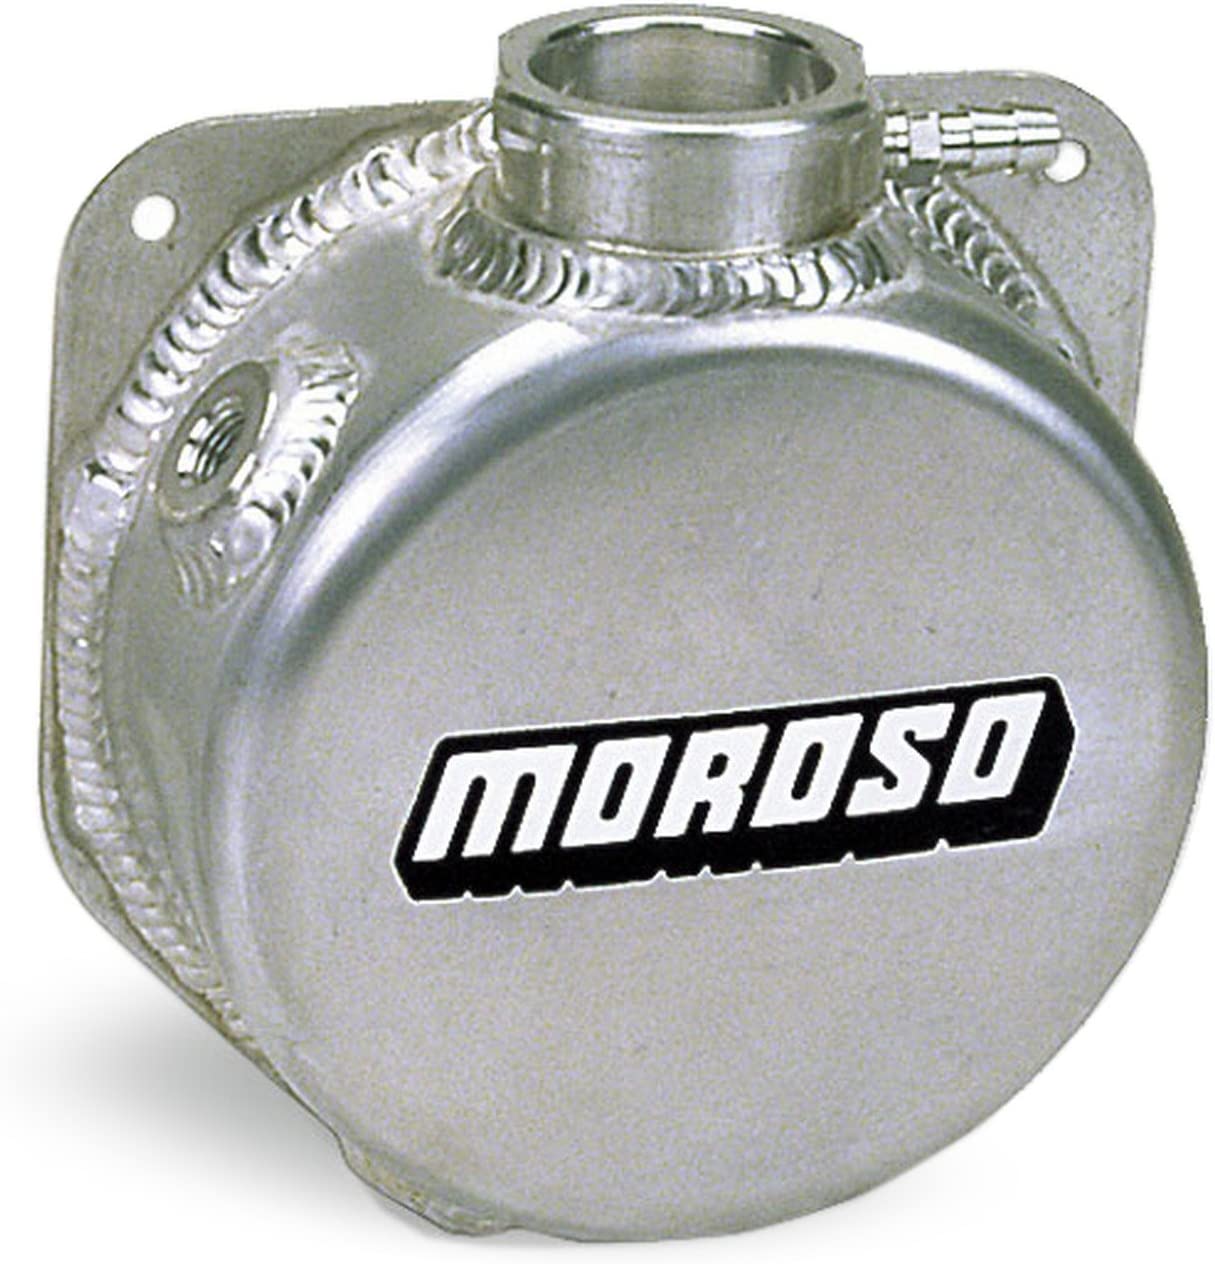 Moroso 63656 Expansion Tank,1 Qt